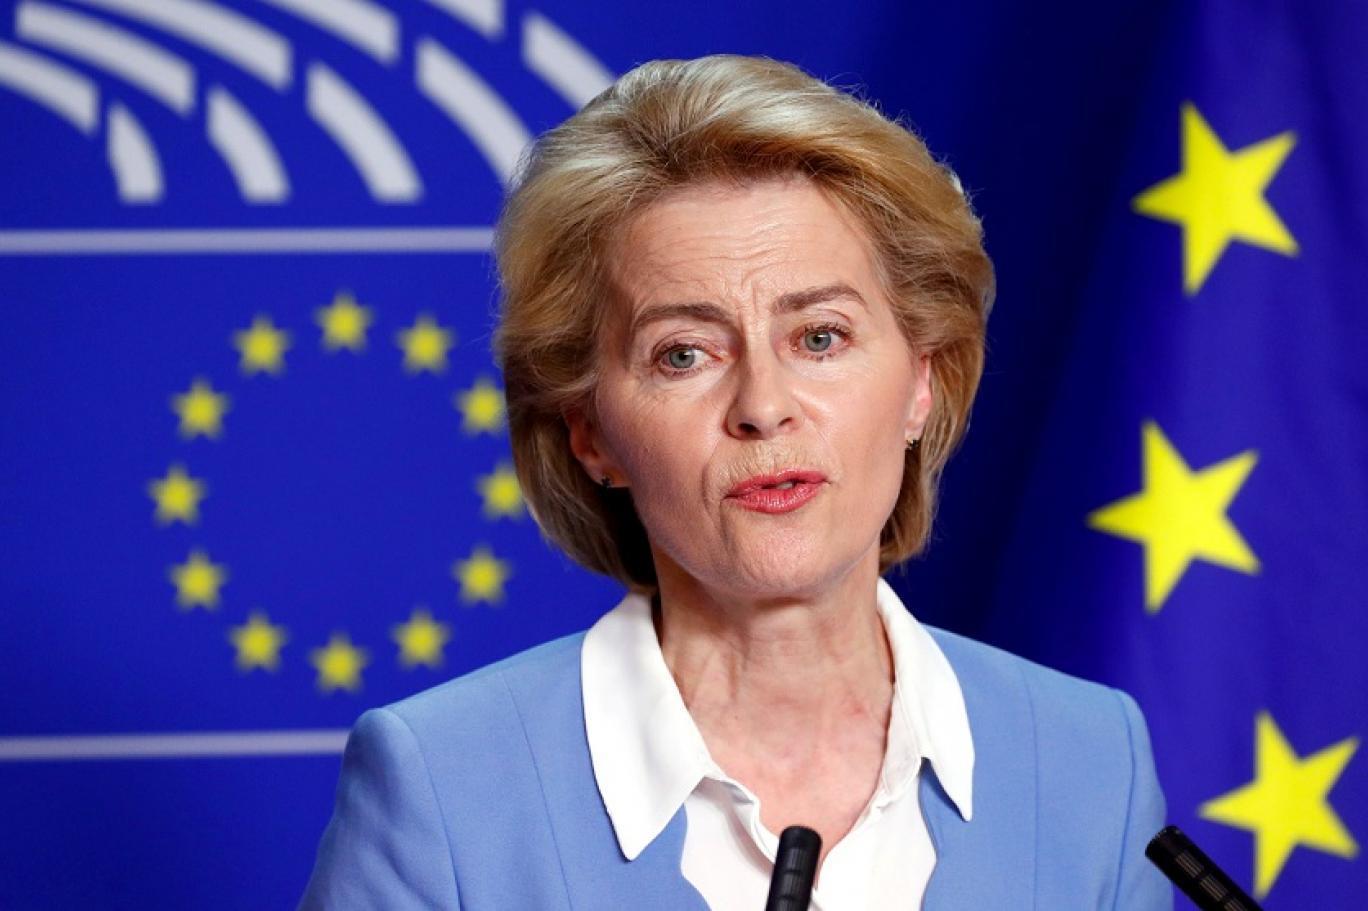 فيروسلا فوندرلين رئيس مفوضية الاتحاد الأوروبي